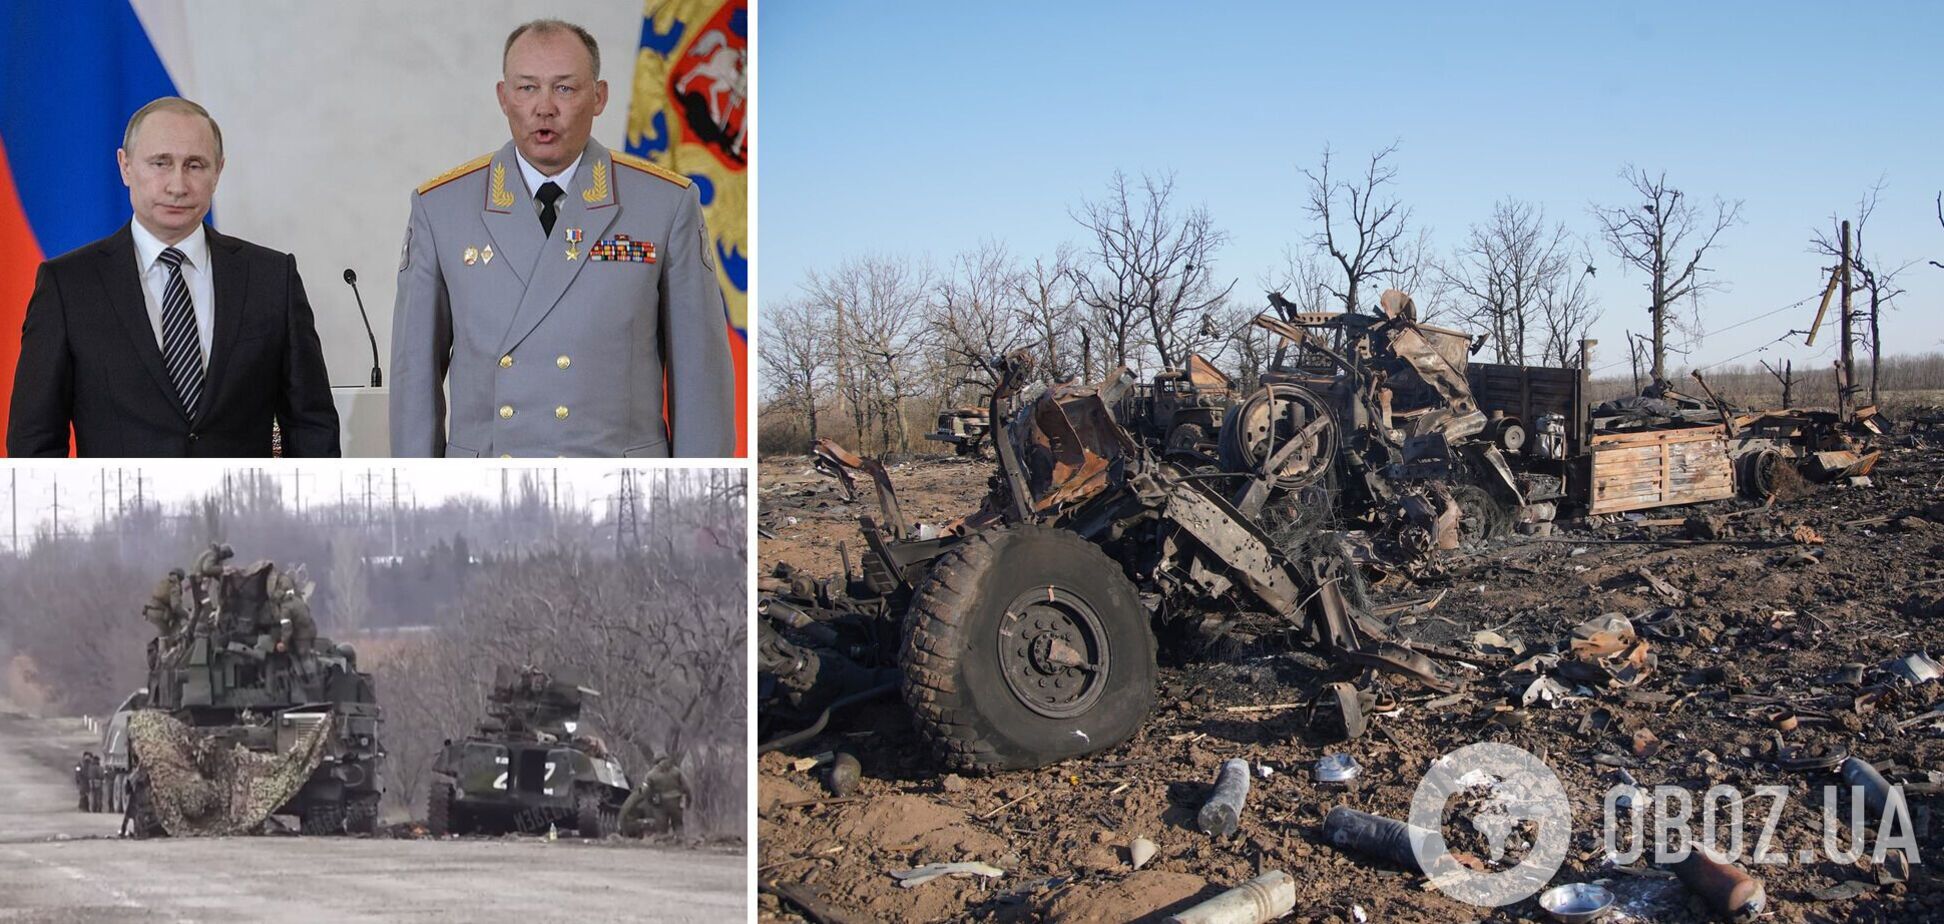 'Колонны целые разбивали': оккупант рассказал о потерях армии Путина и пожаловался на командование. Аудио